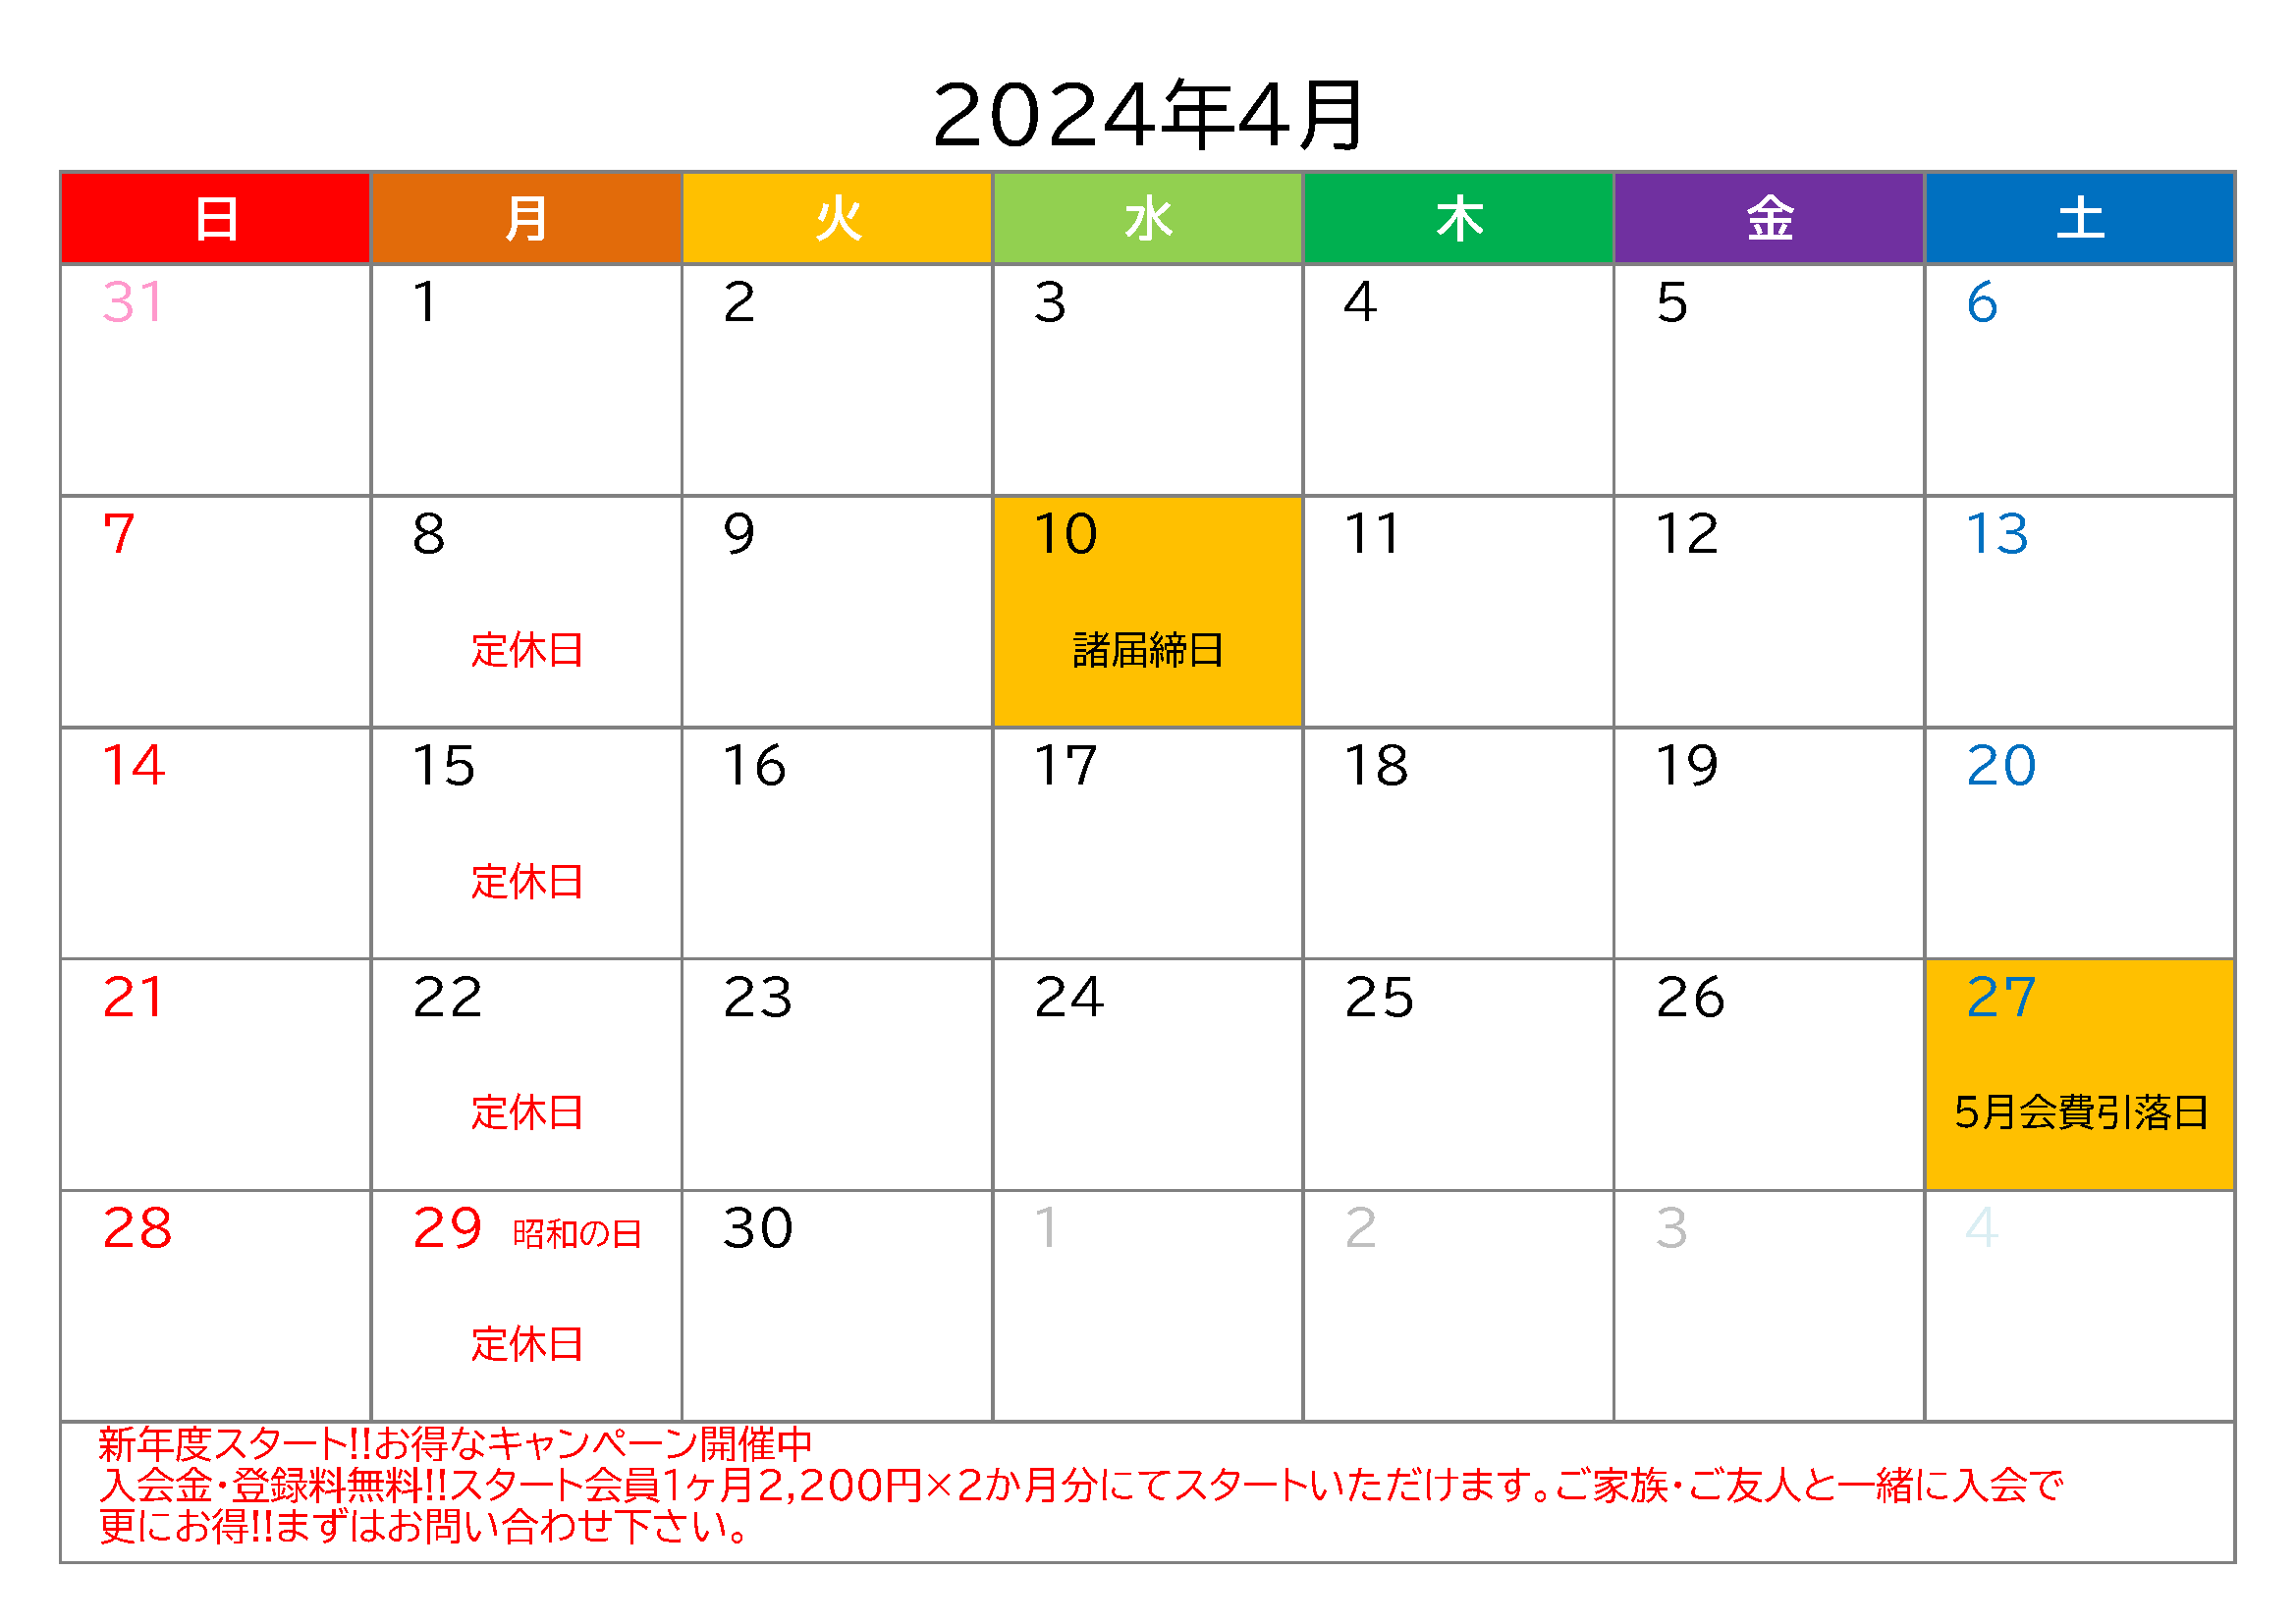 4月分スポプラネクスト水戸千波イベントカレンダー